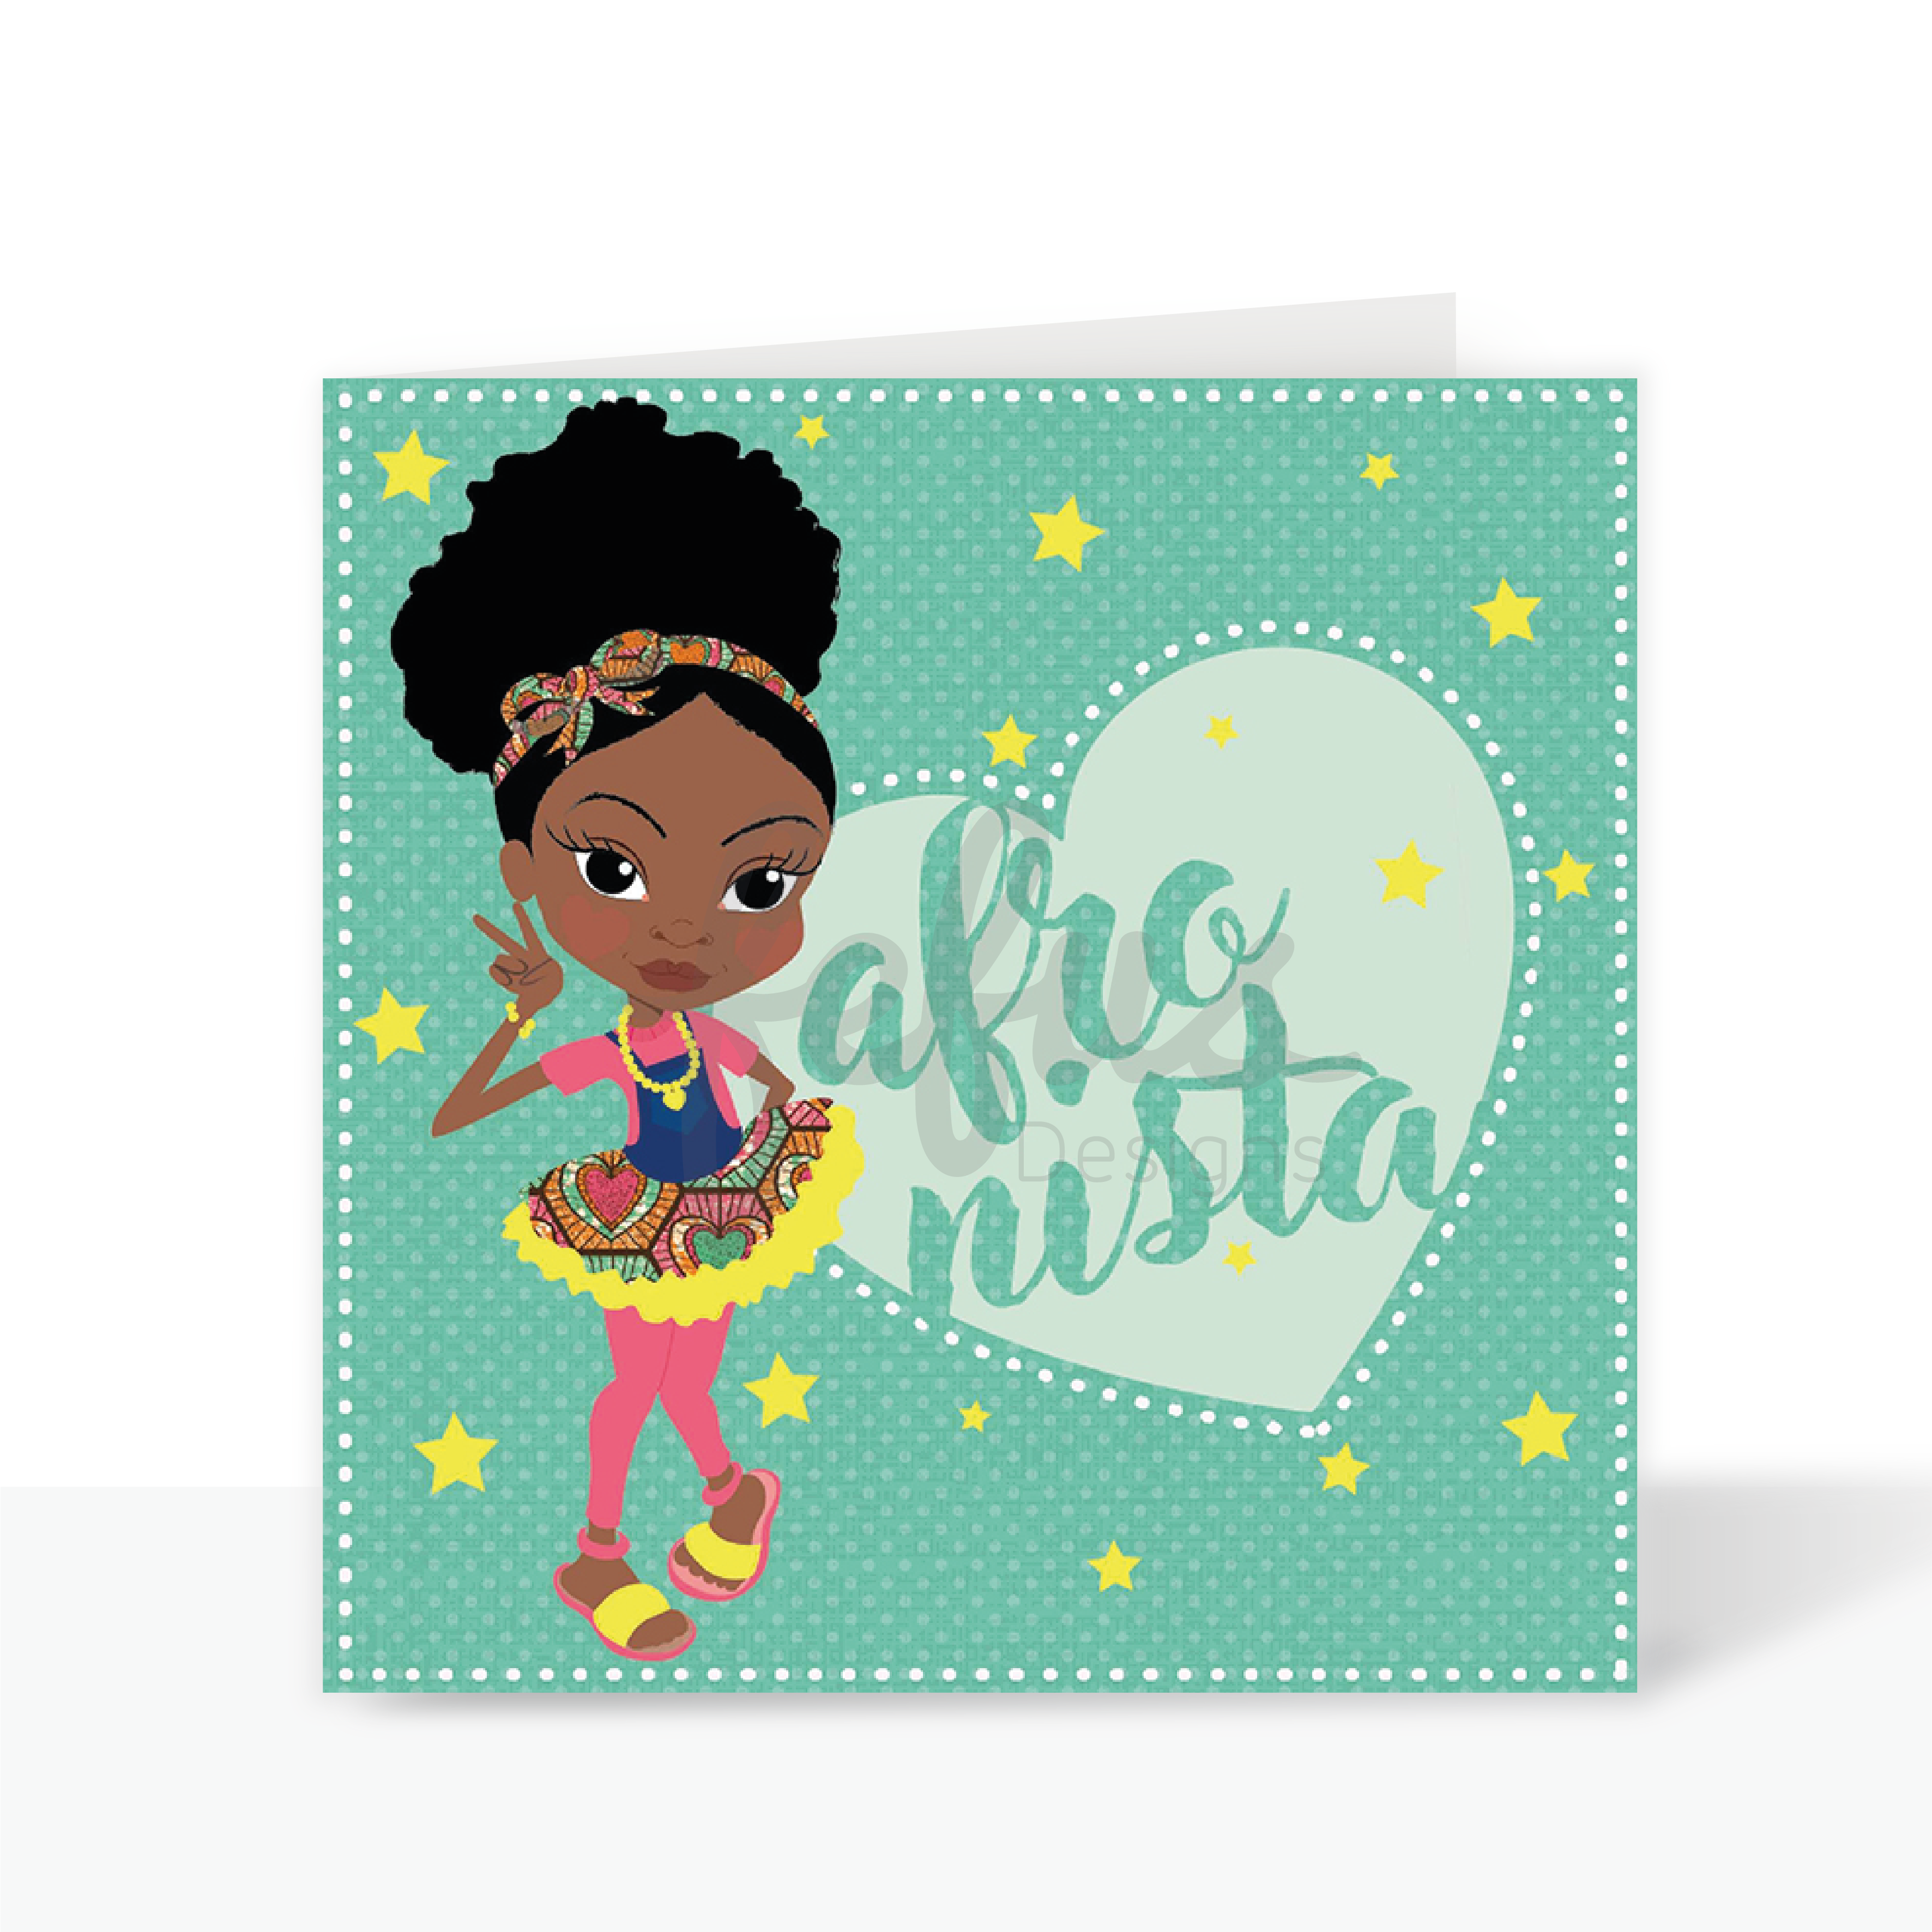 Kadija - Afronista - Black Kids Greetings Card | Fefus designs